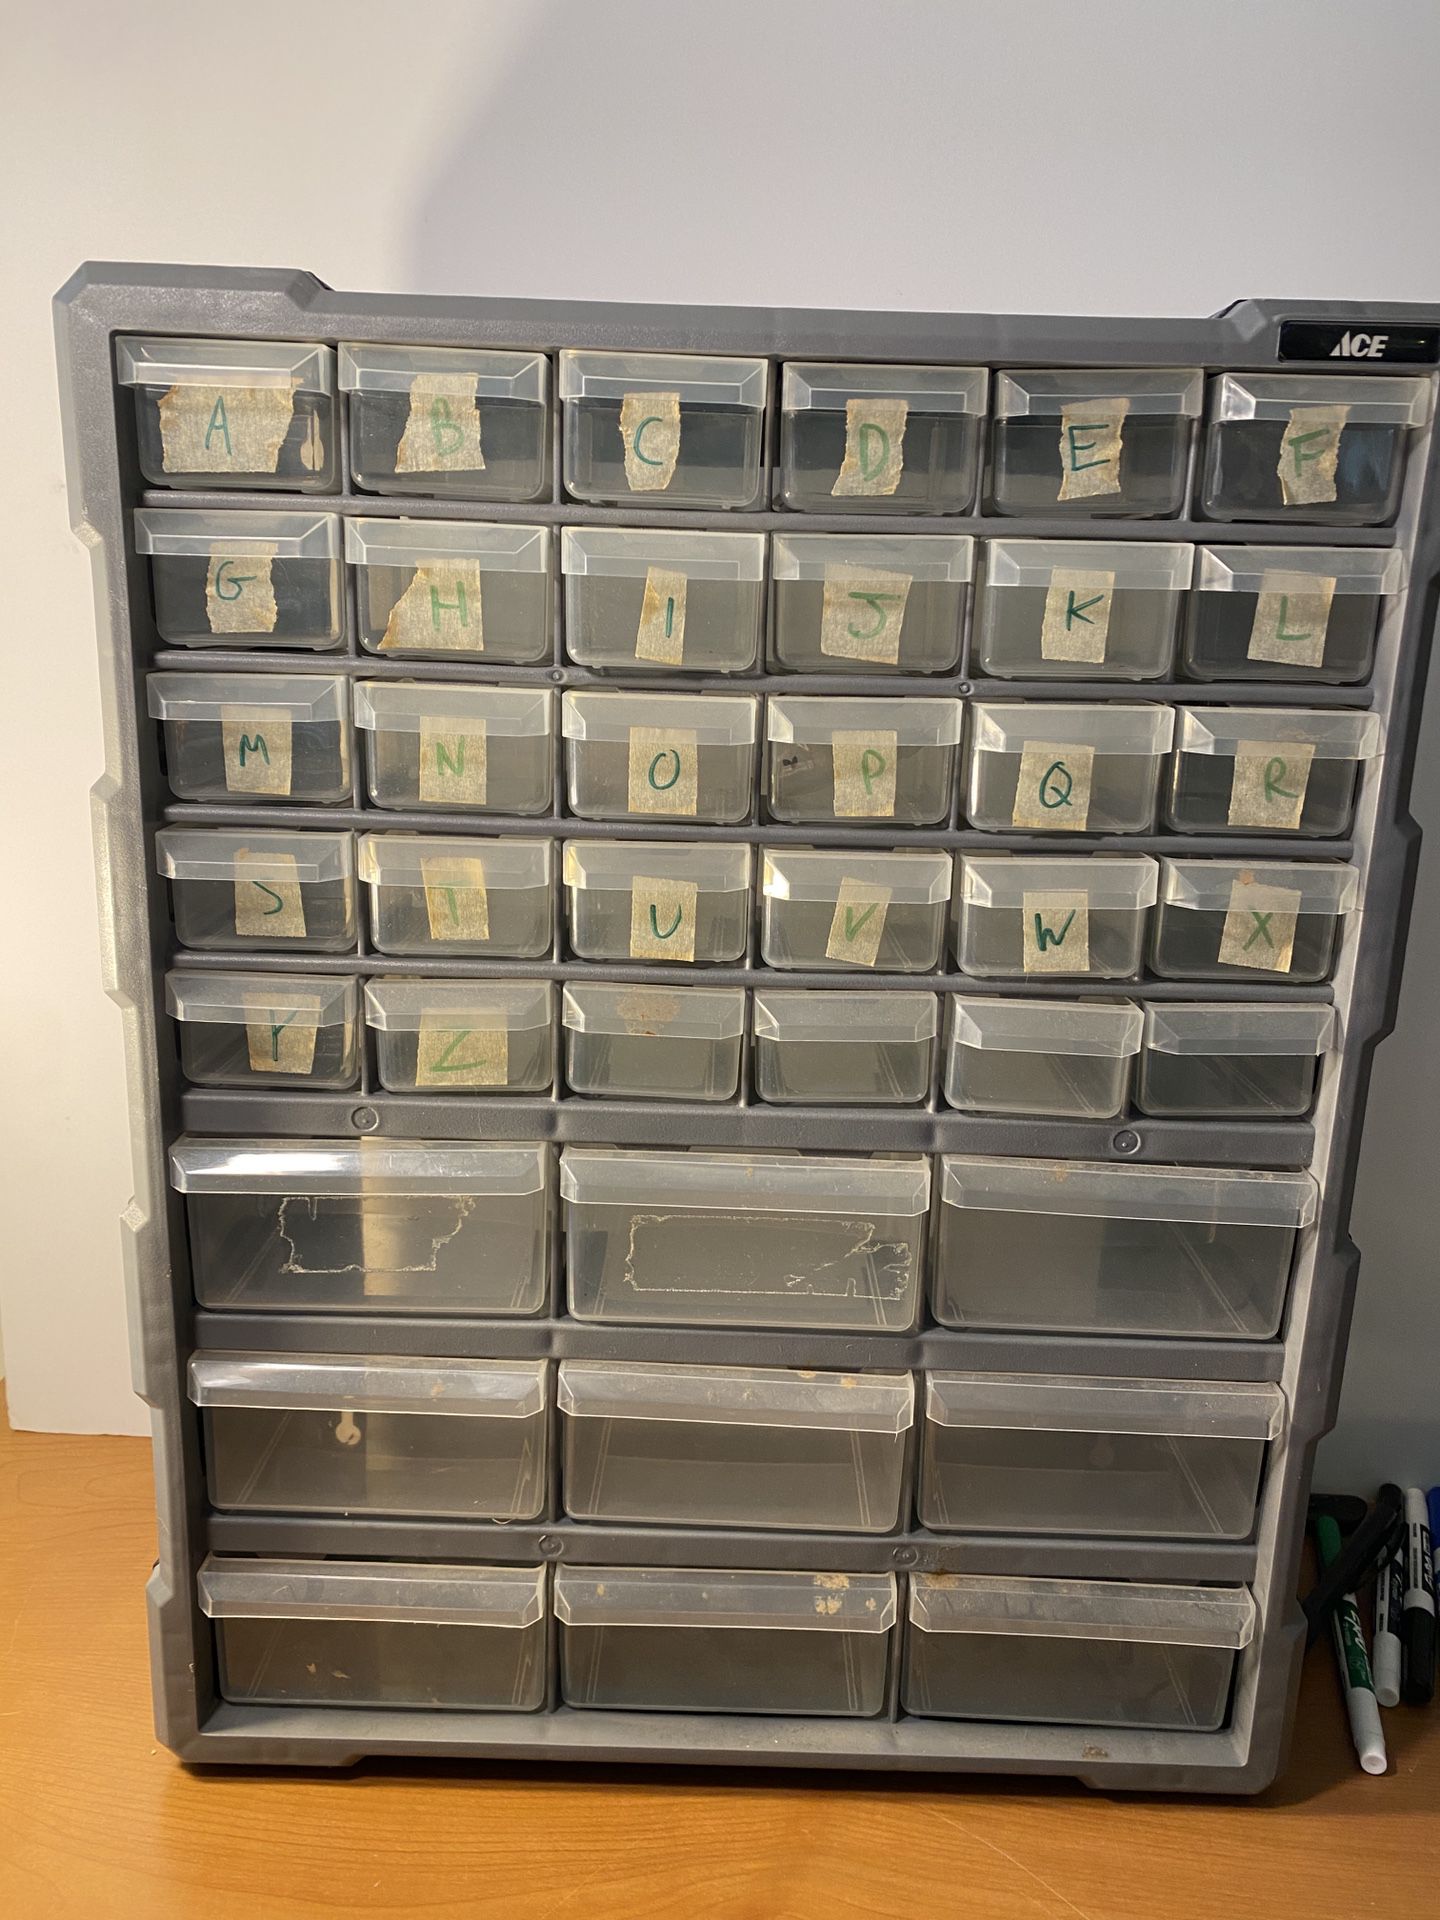 Components / Parts Storage Bin Organizer